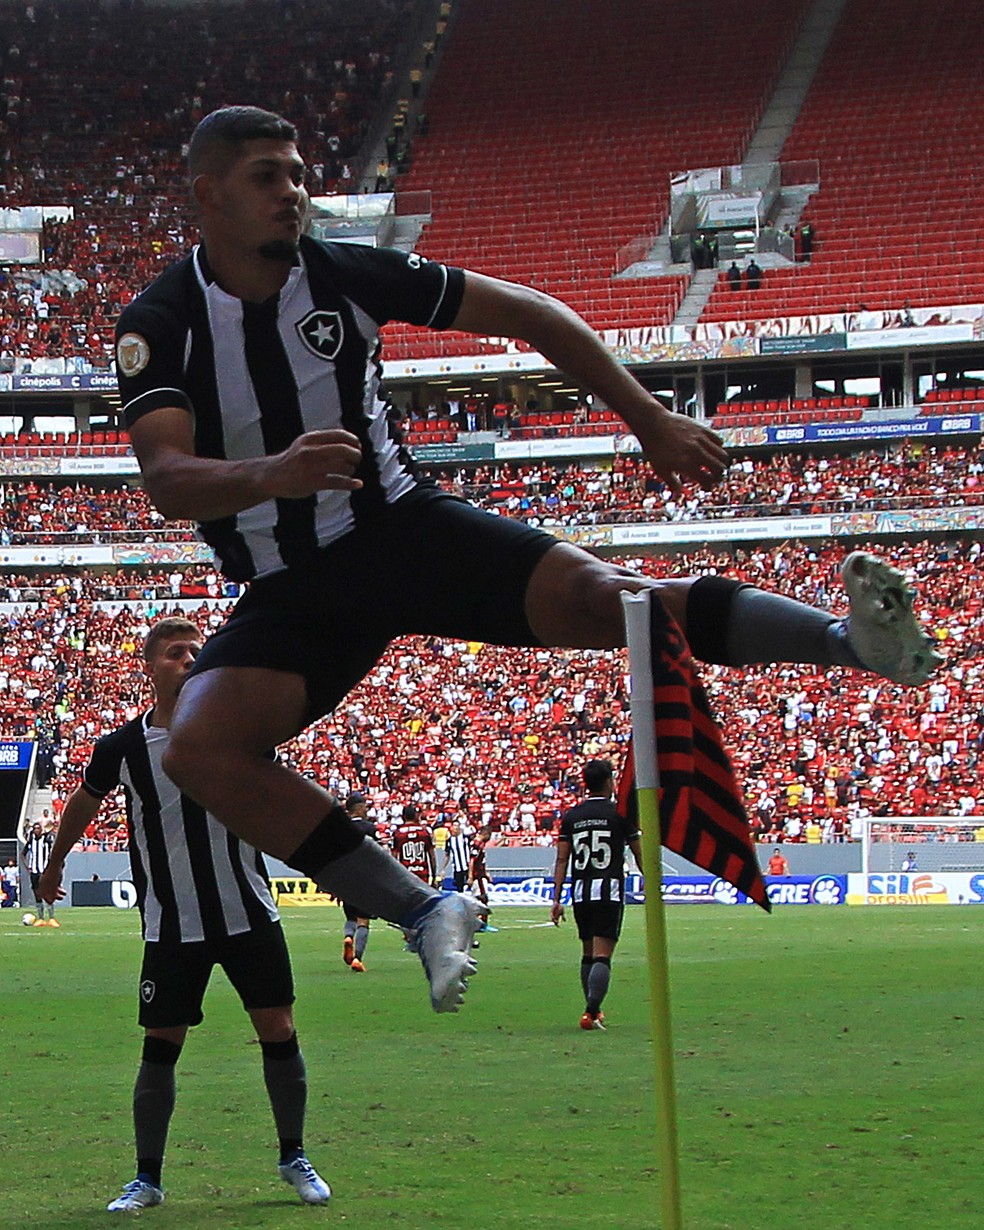 Saiba tudo sobre o jogo do Botafogo hoje; resultado interessa ao Flamengo